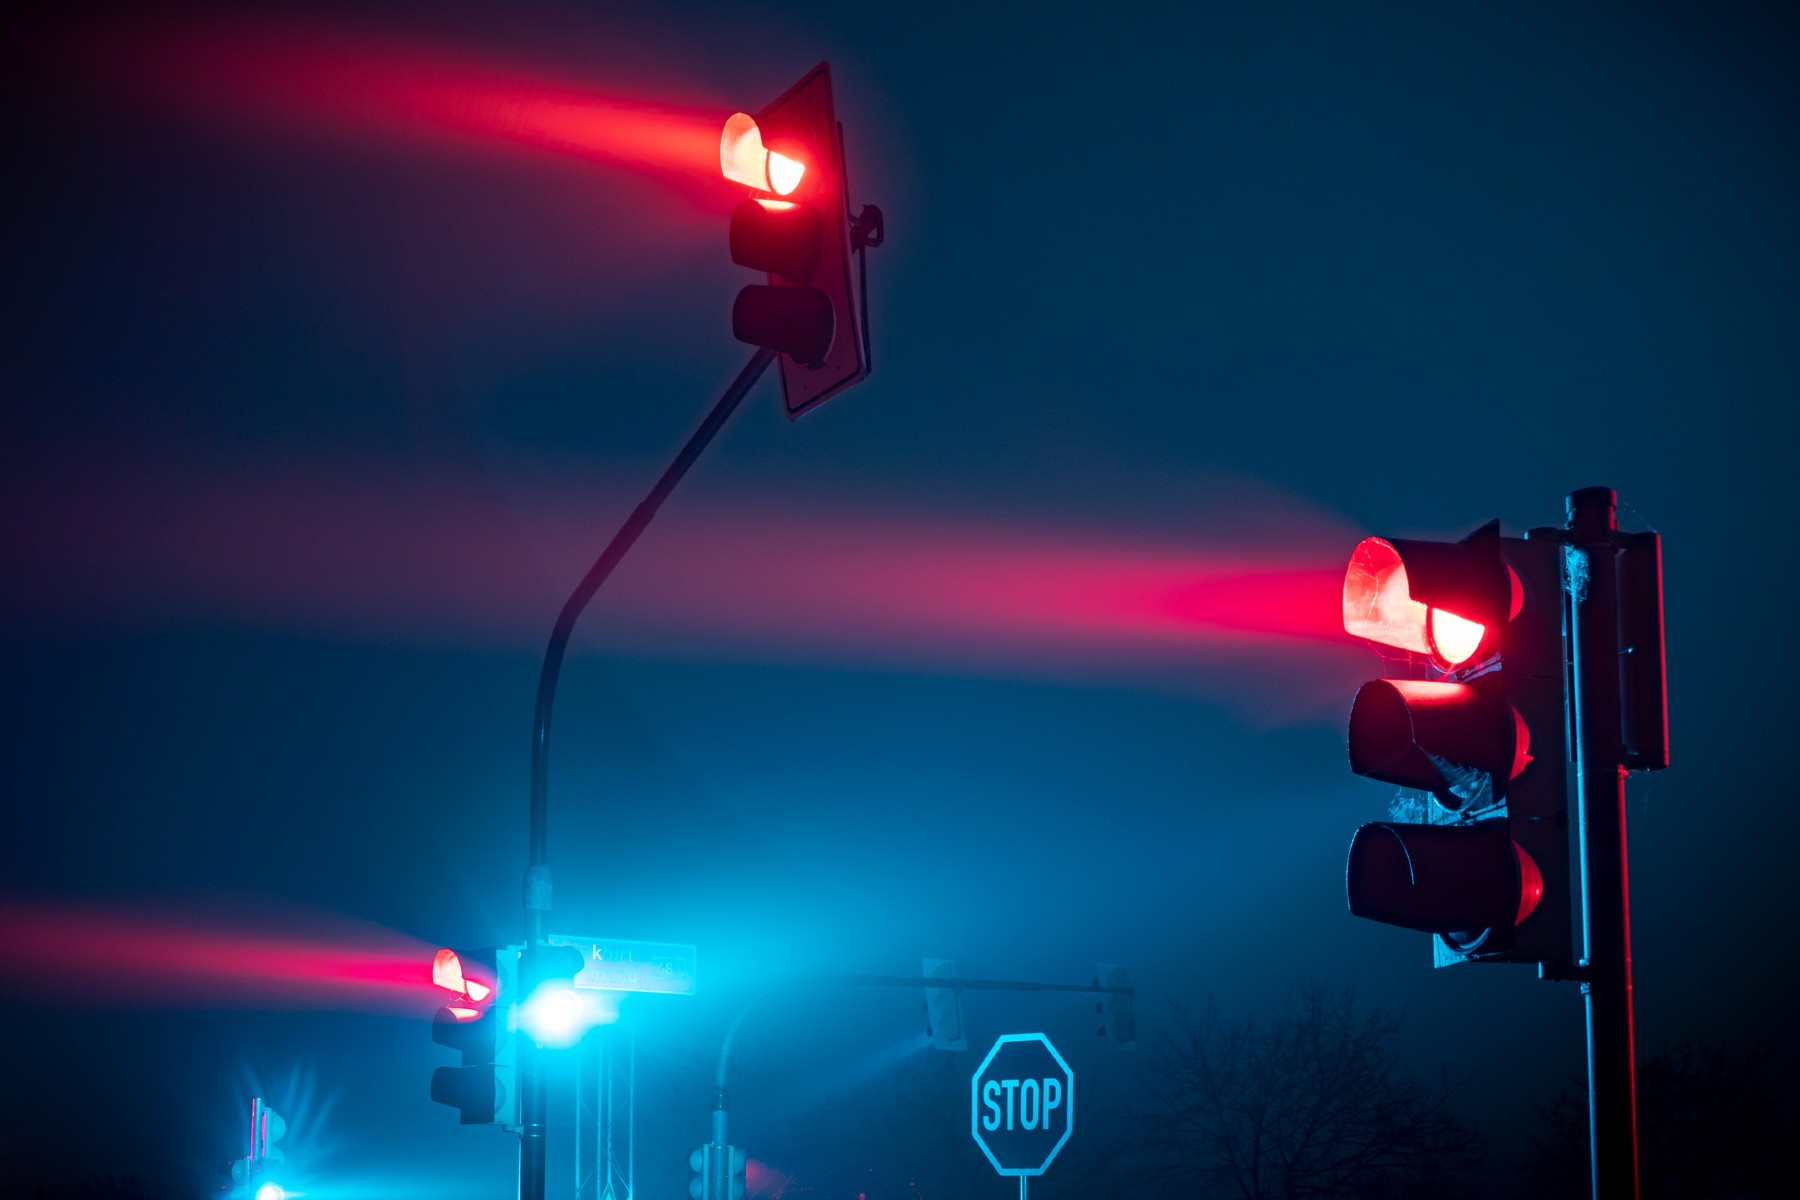 El robo de cobre de los semáforos obliga a cambiarlos por señales de ‘stop’: este cruce se convierte en un caos